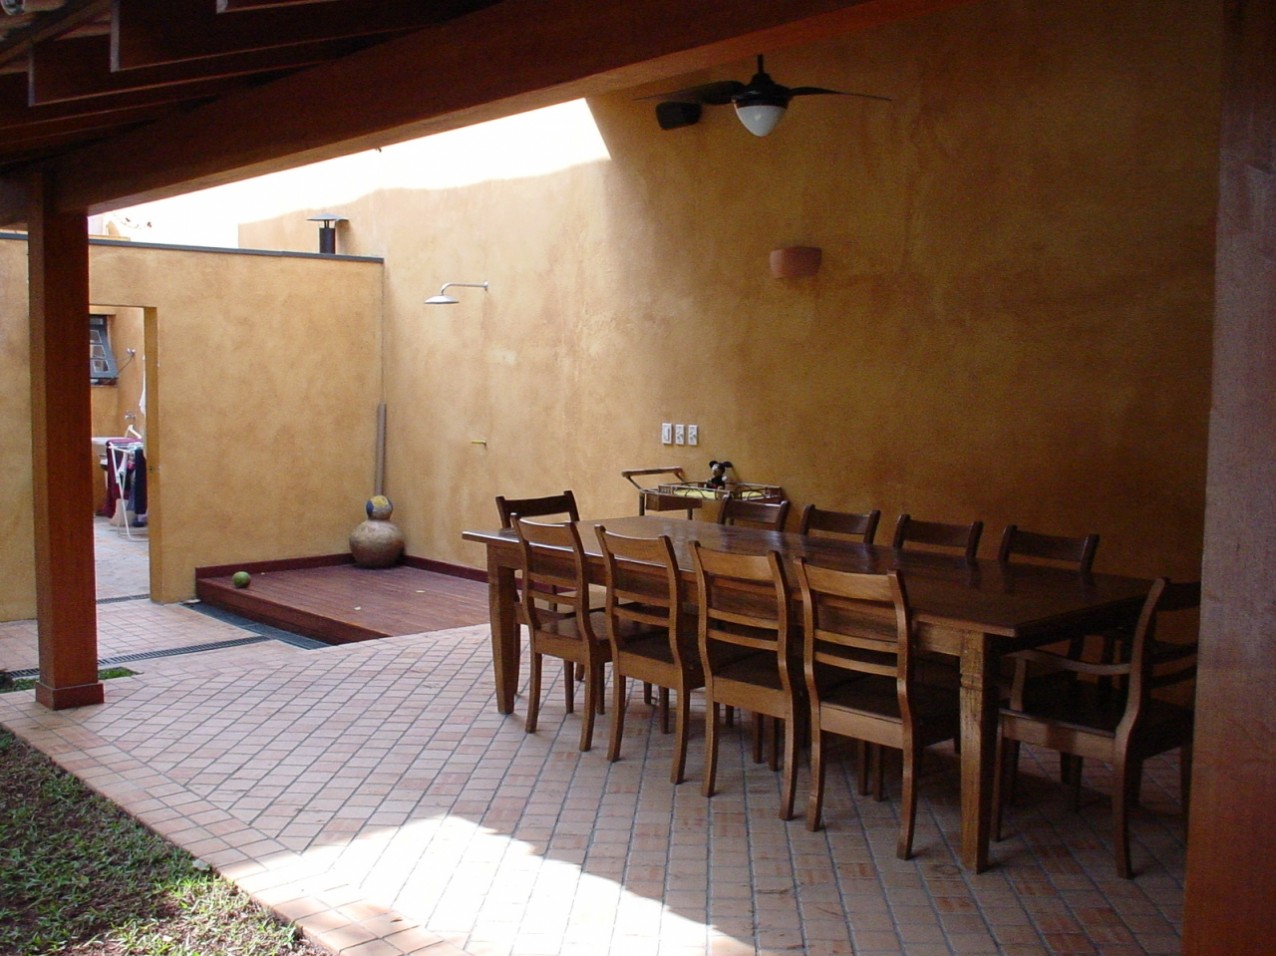 Obra residencial Pinheiros II - Salão de jantar